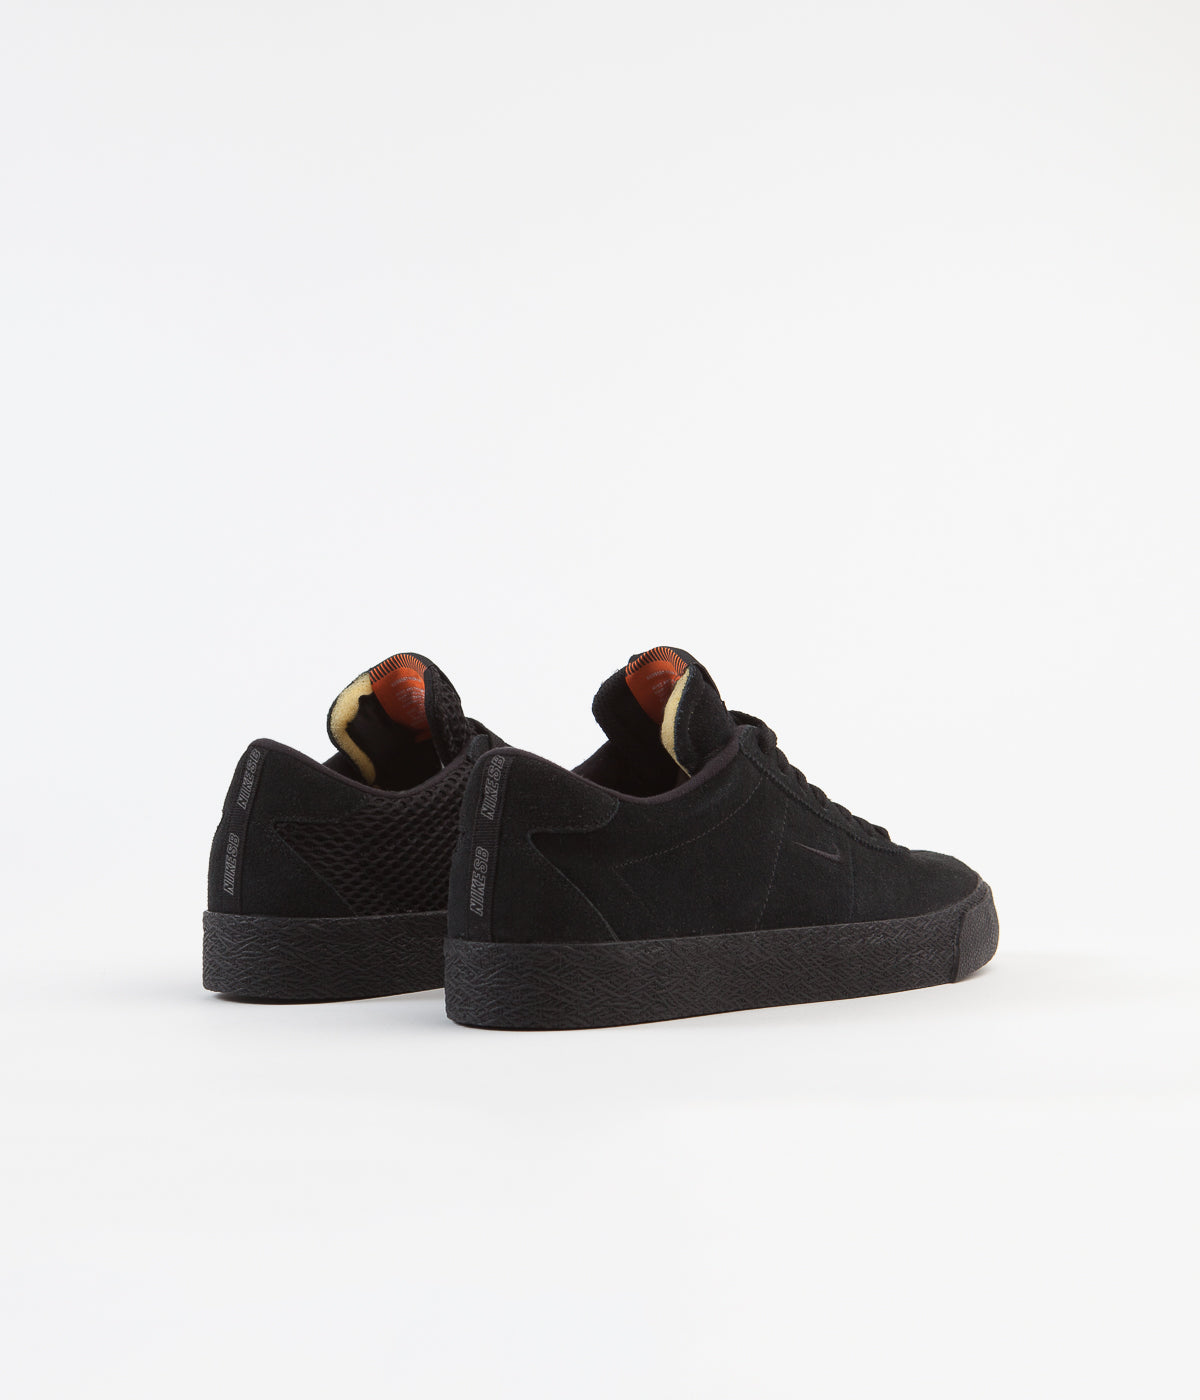 Nike SB Orange Label Bruin Ultra 'Ishod' Shoes - Black / Black - Safet ...